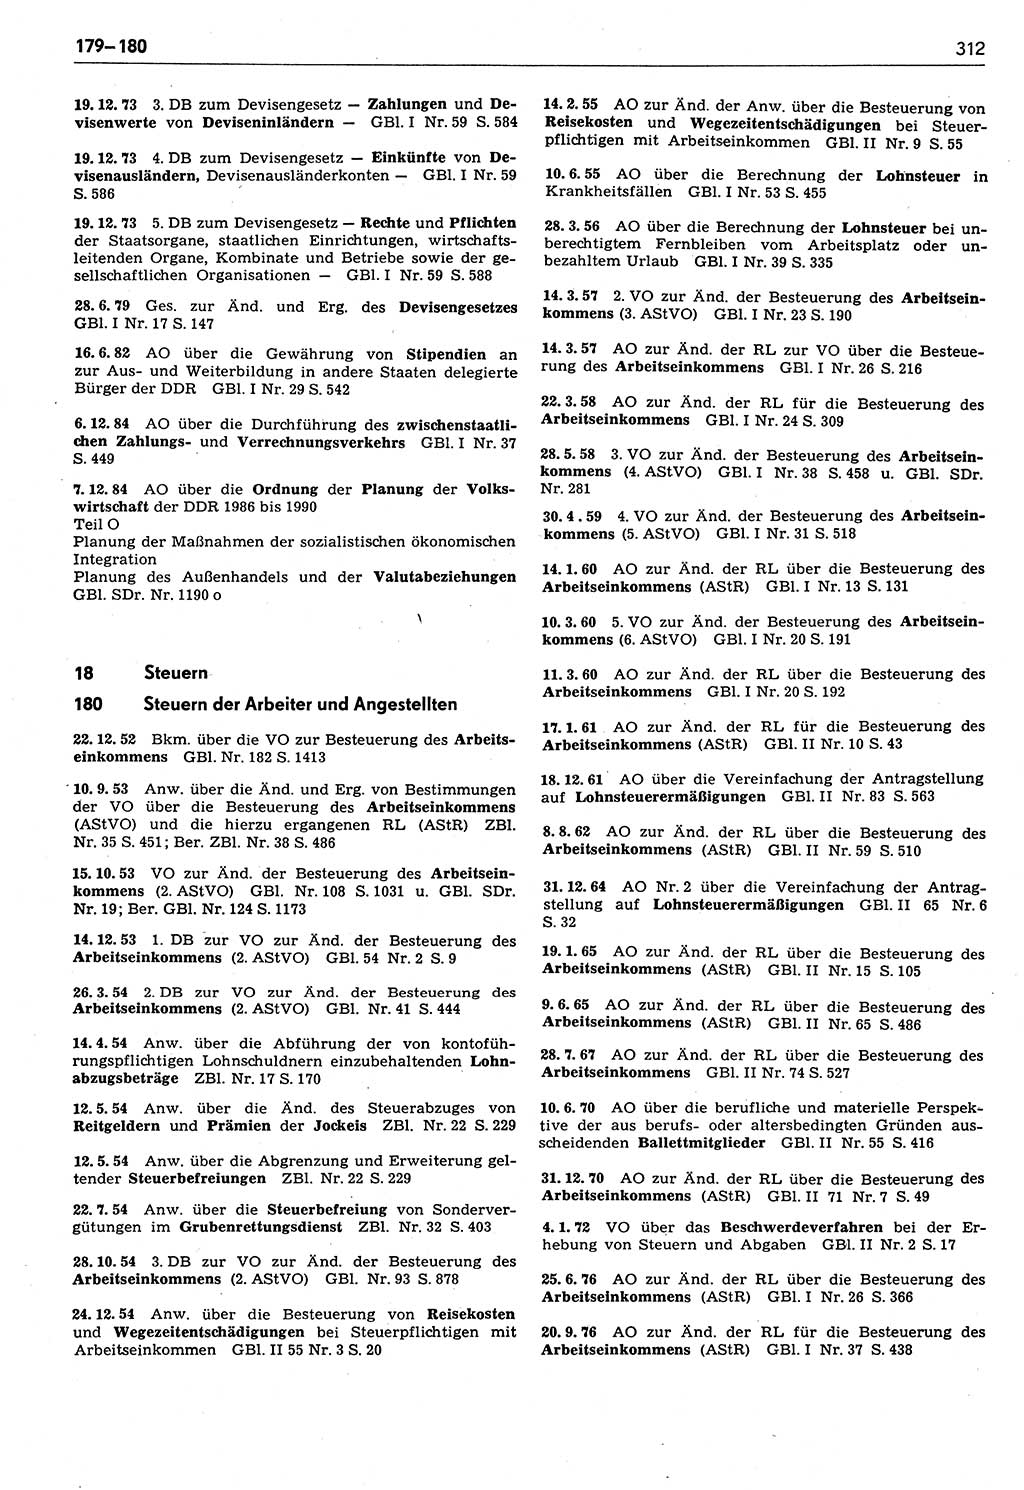 Das geltende Recht der Deutschen Demokratischen Republik (DDR) 1949-1988, Seite 312 (Gelt. R. DDR 1949-1988, S. 312)